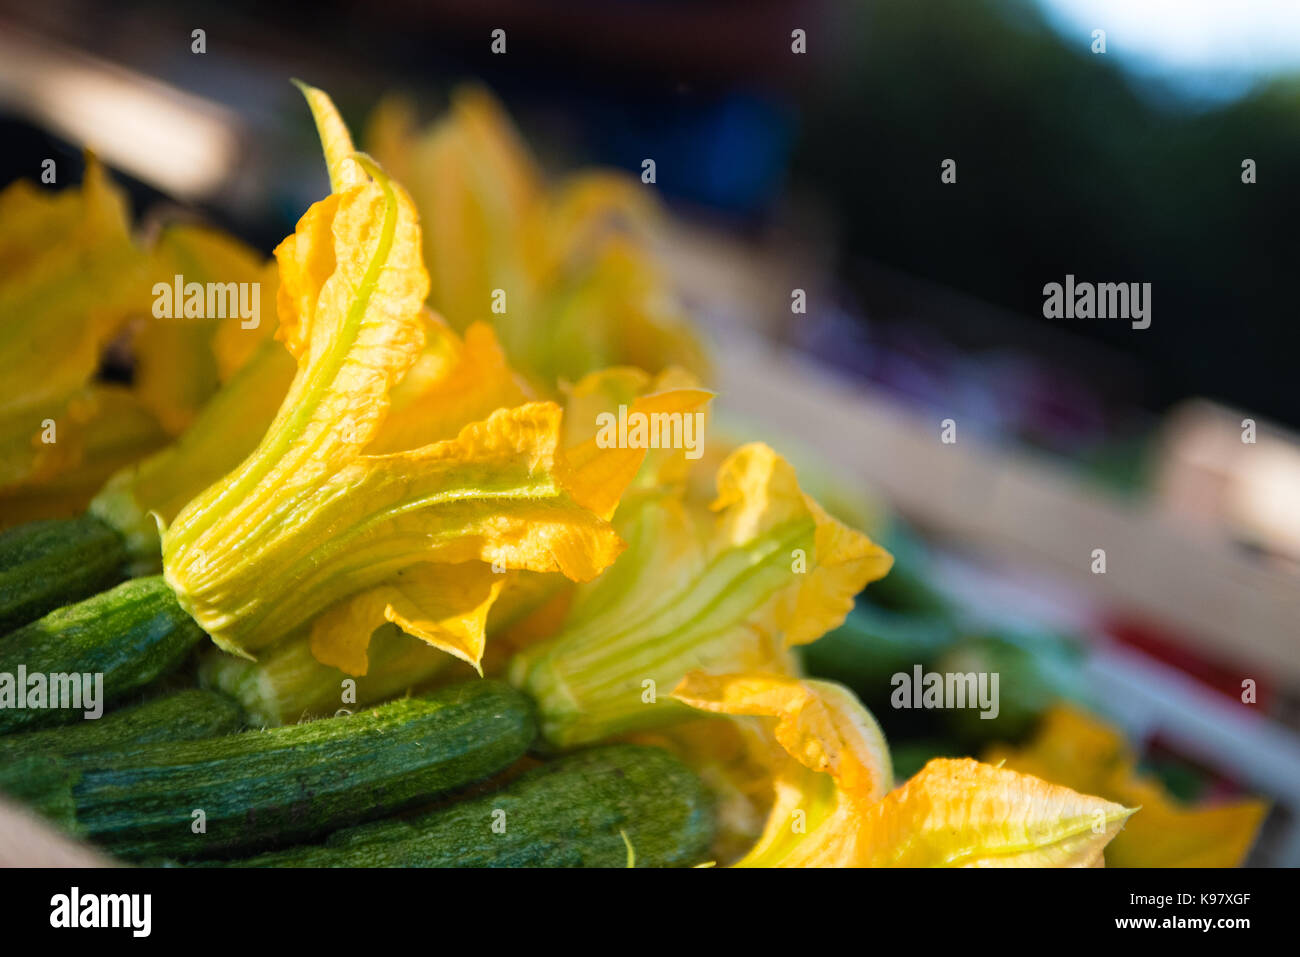 Aprire giallo fiore di zucchine mazzetto fuoco selettivo dettaglio stallo del mercato in background Foto Stock